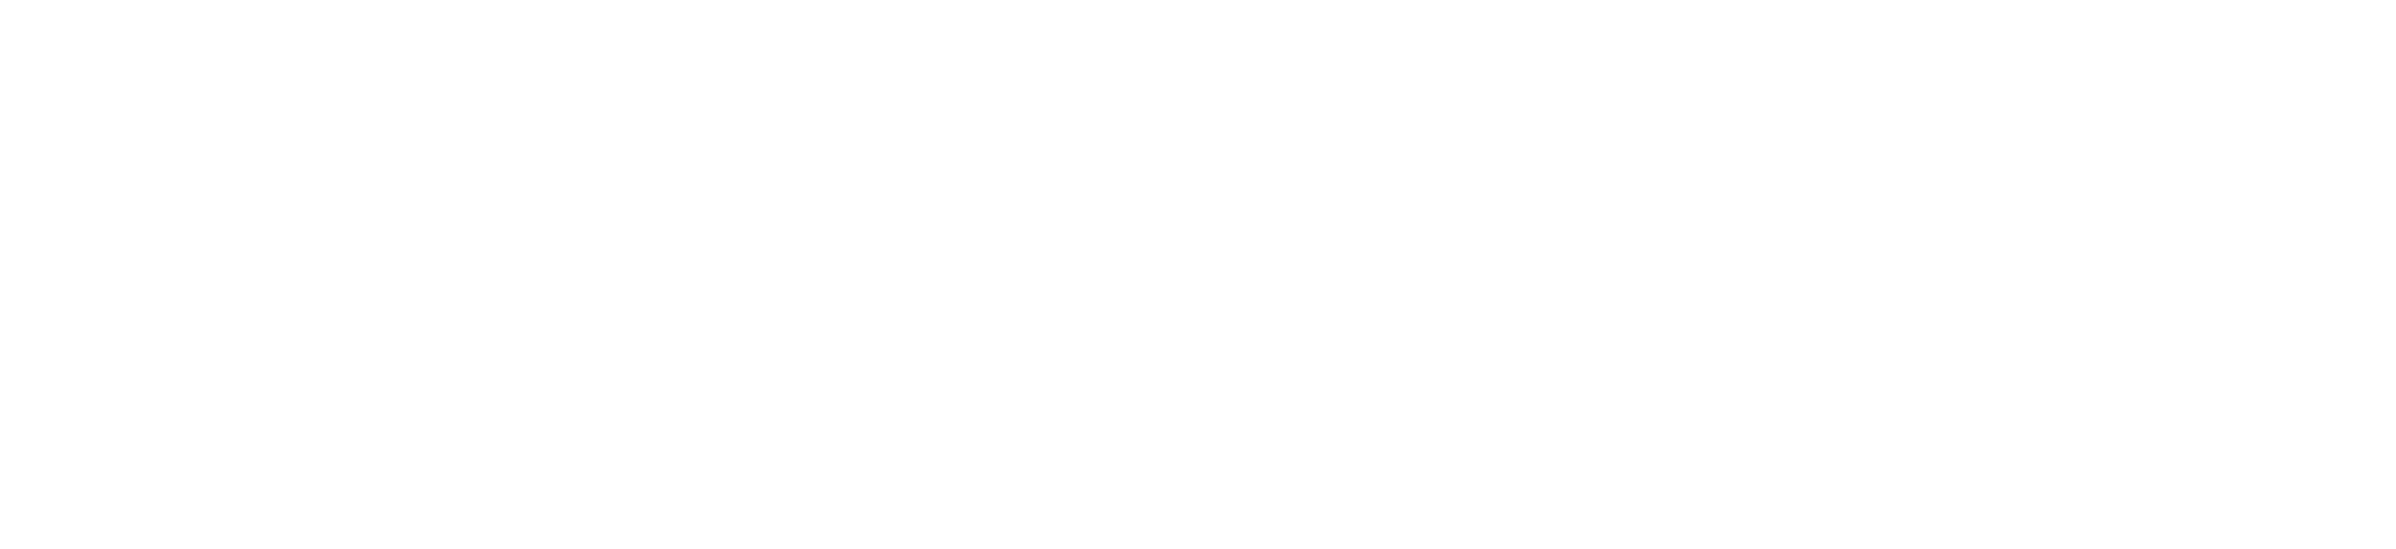 honest-group-logo-white